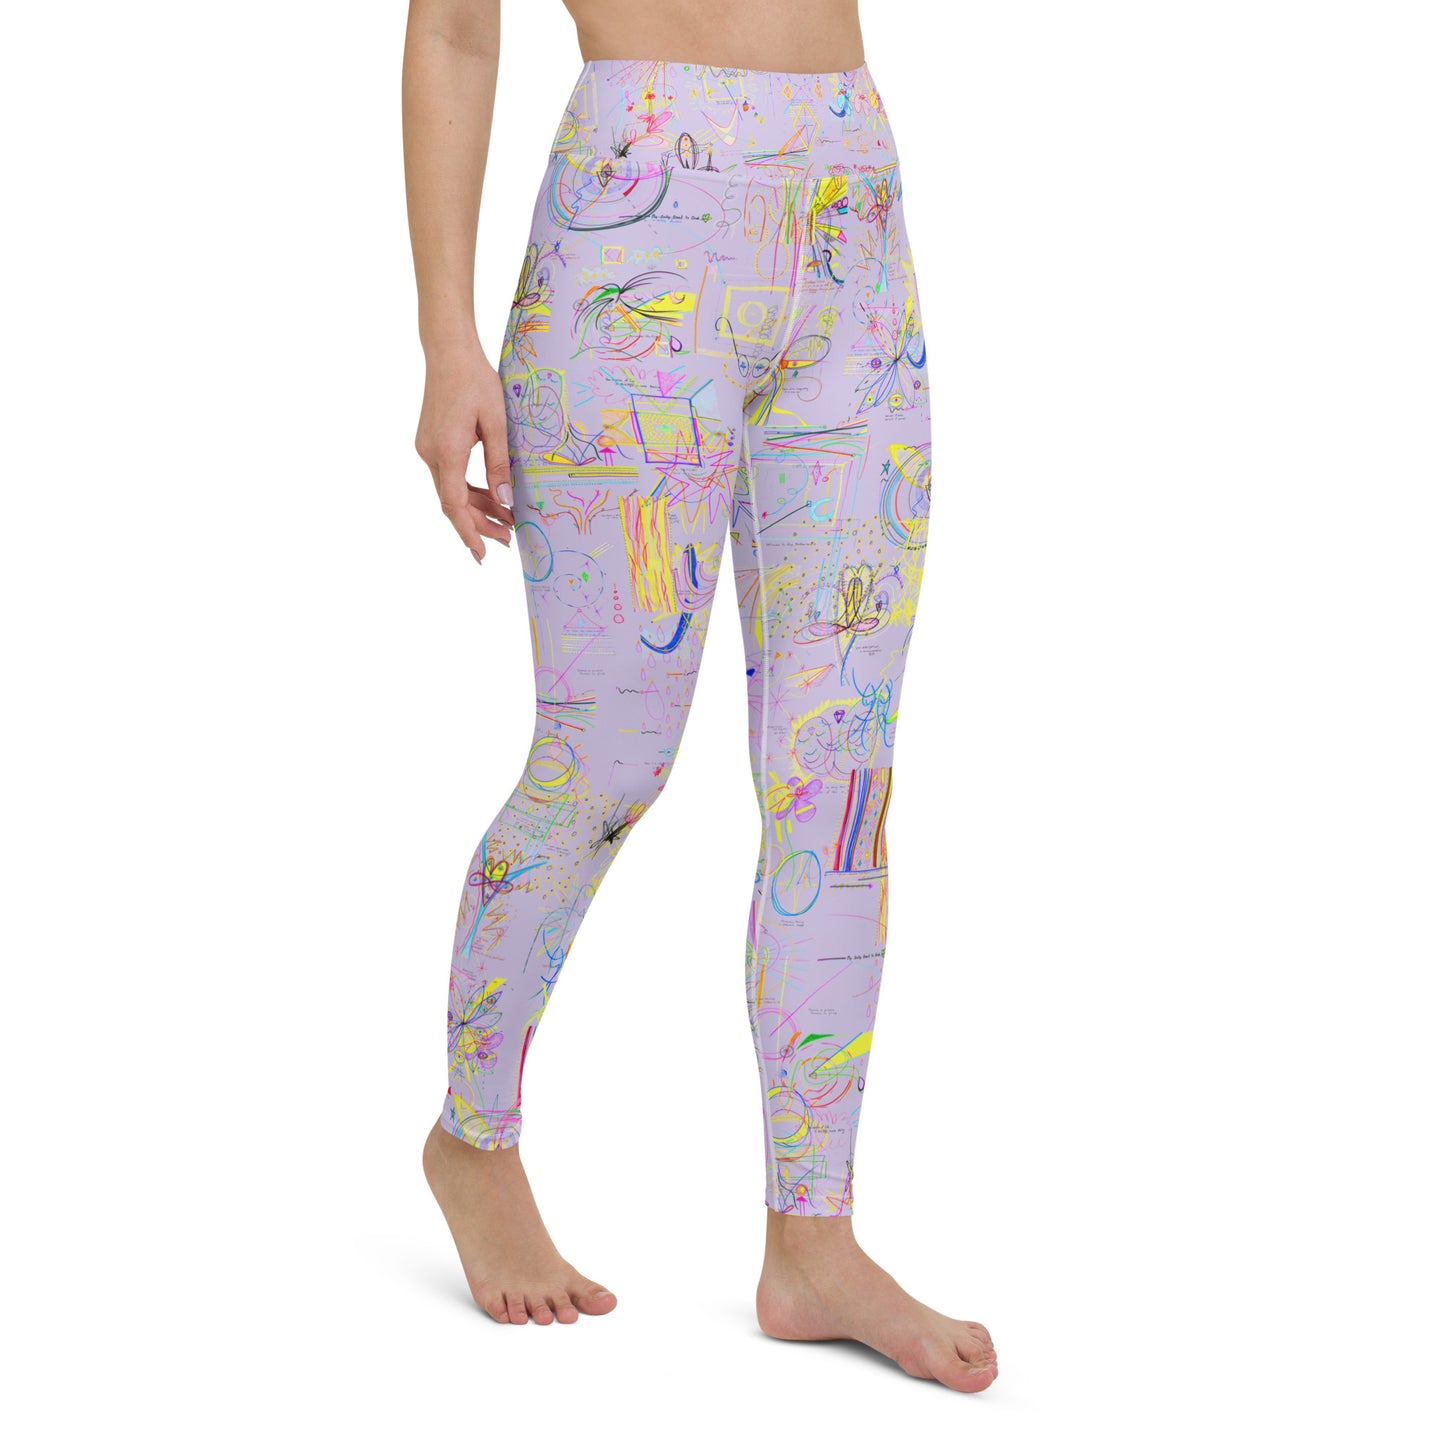 Sequel Stretch, feminine yoga leggings in light purple